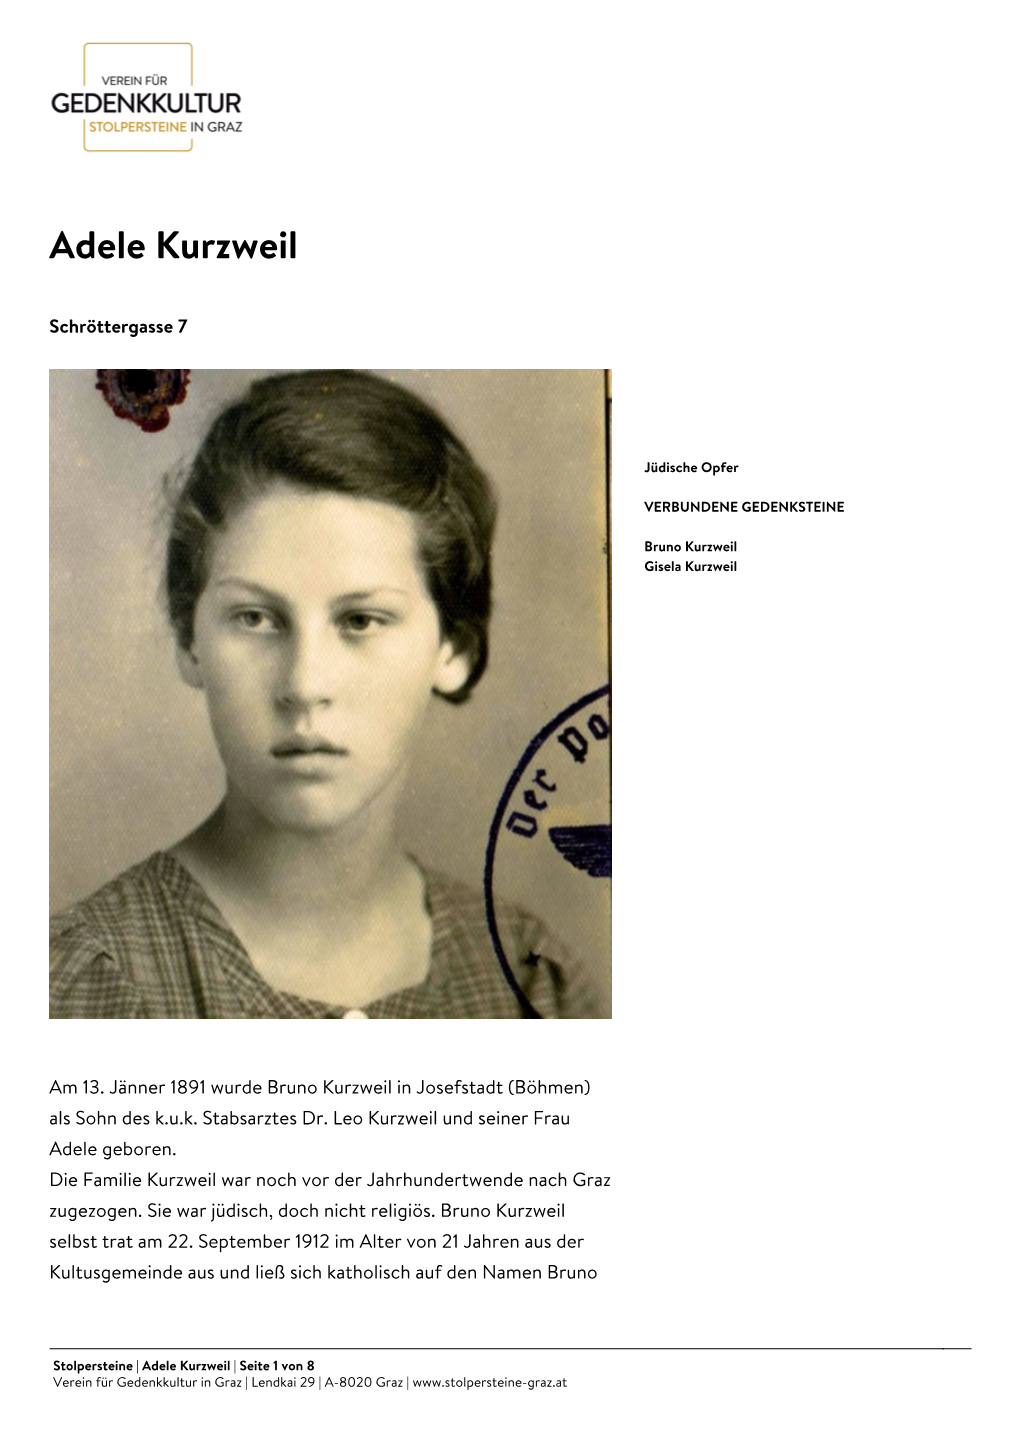 Adele Kurzweil